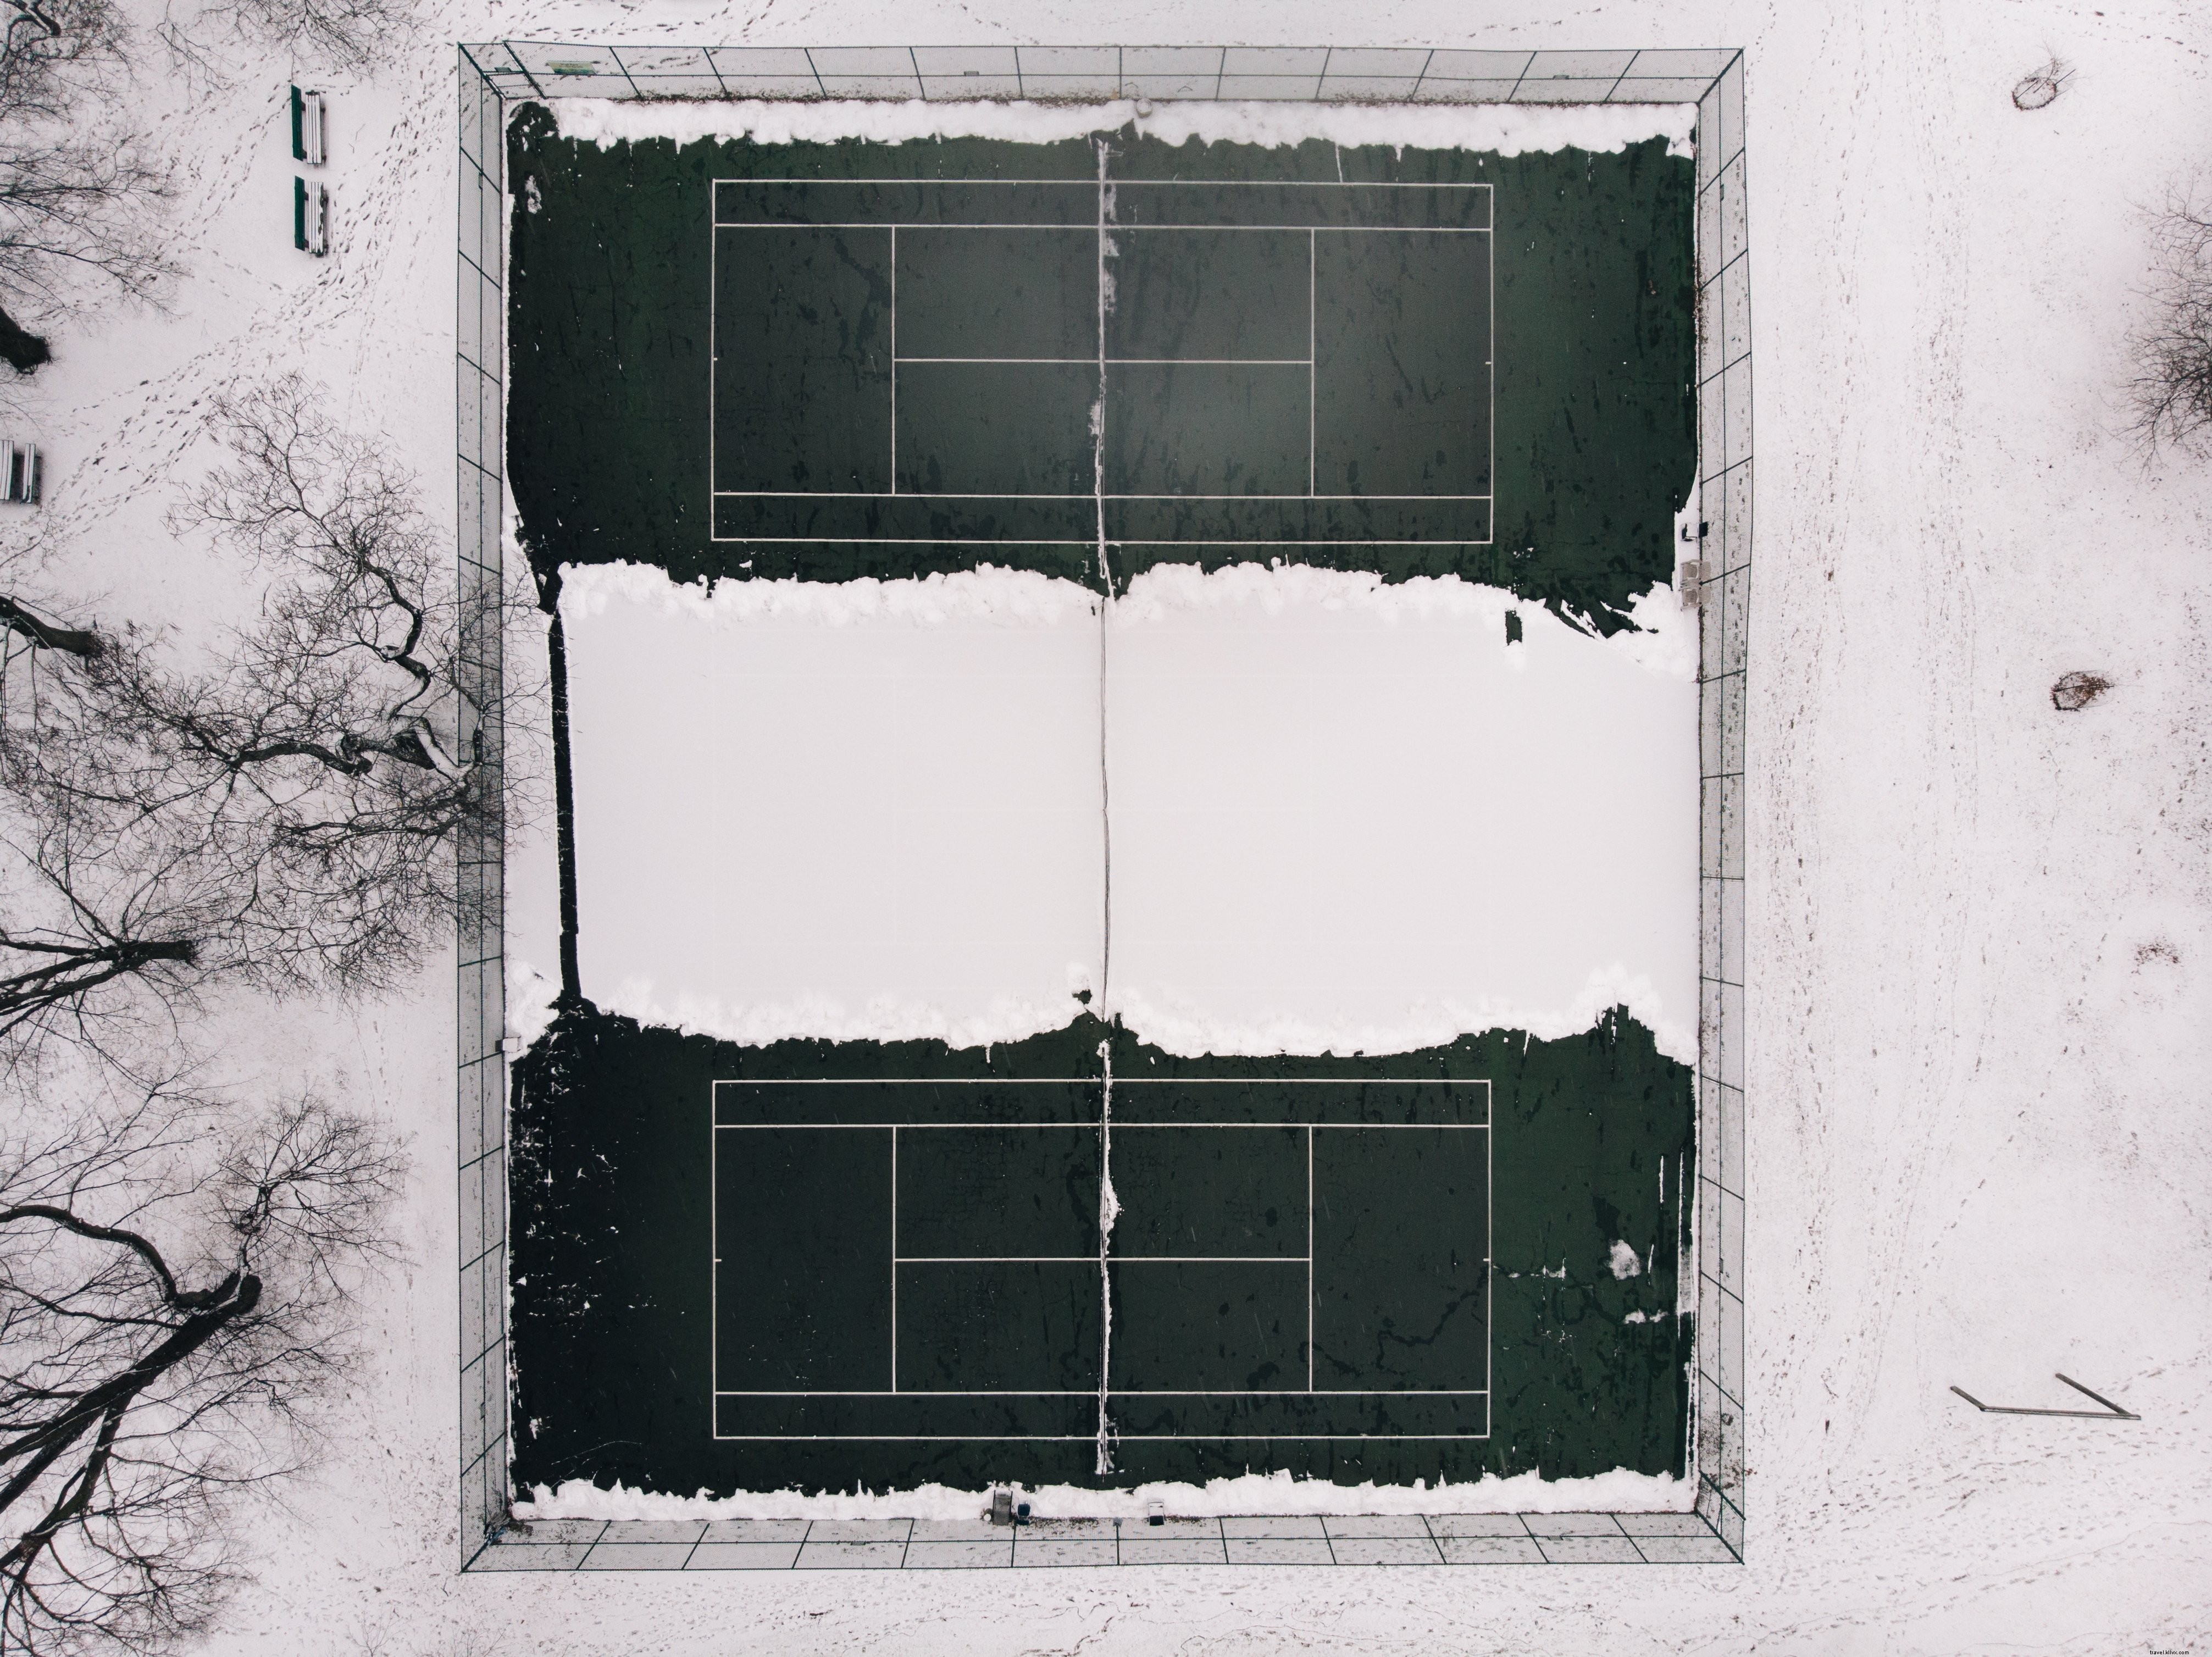 Courts de tennis abandonnés pour la saison d hiver Photo